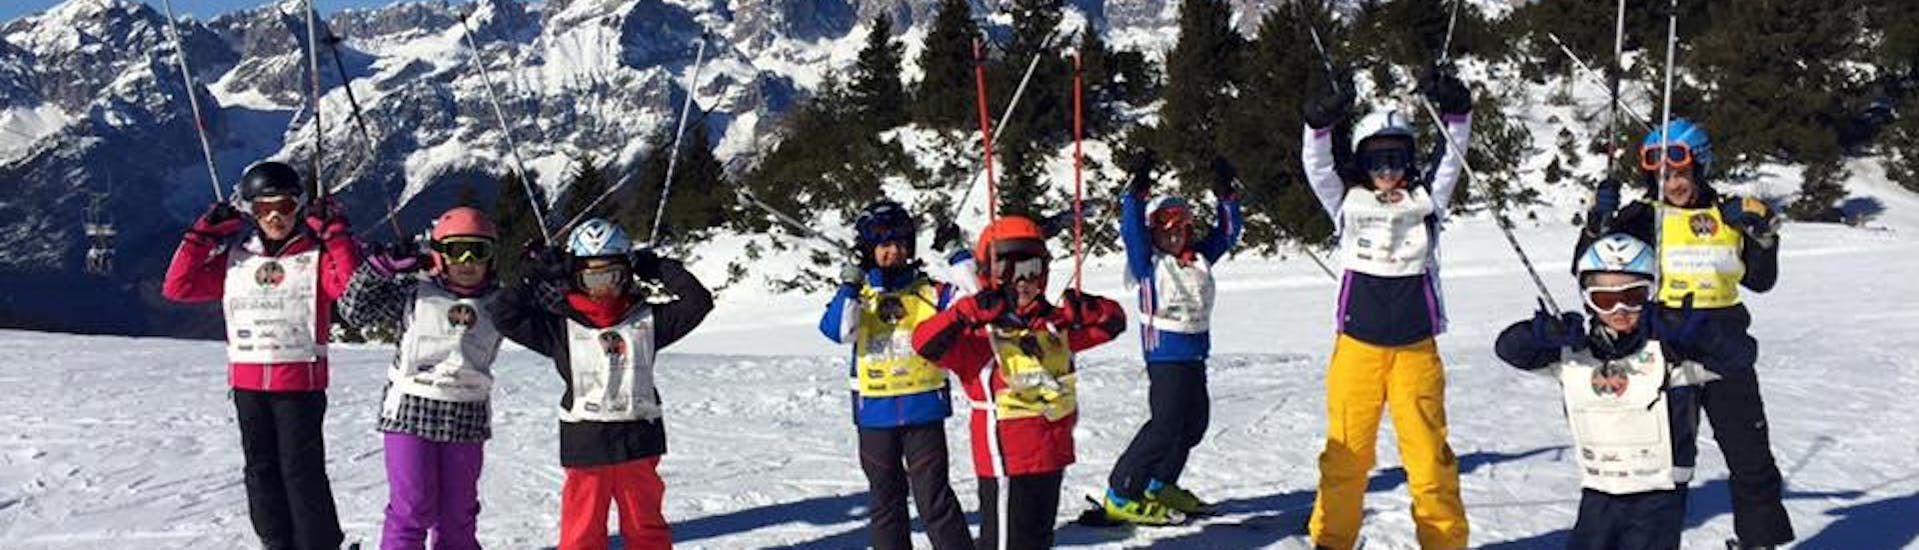 Clases de esquí para niños a partir de 4 años para debutantes.